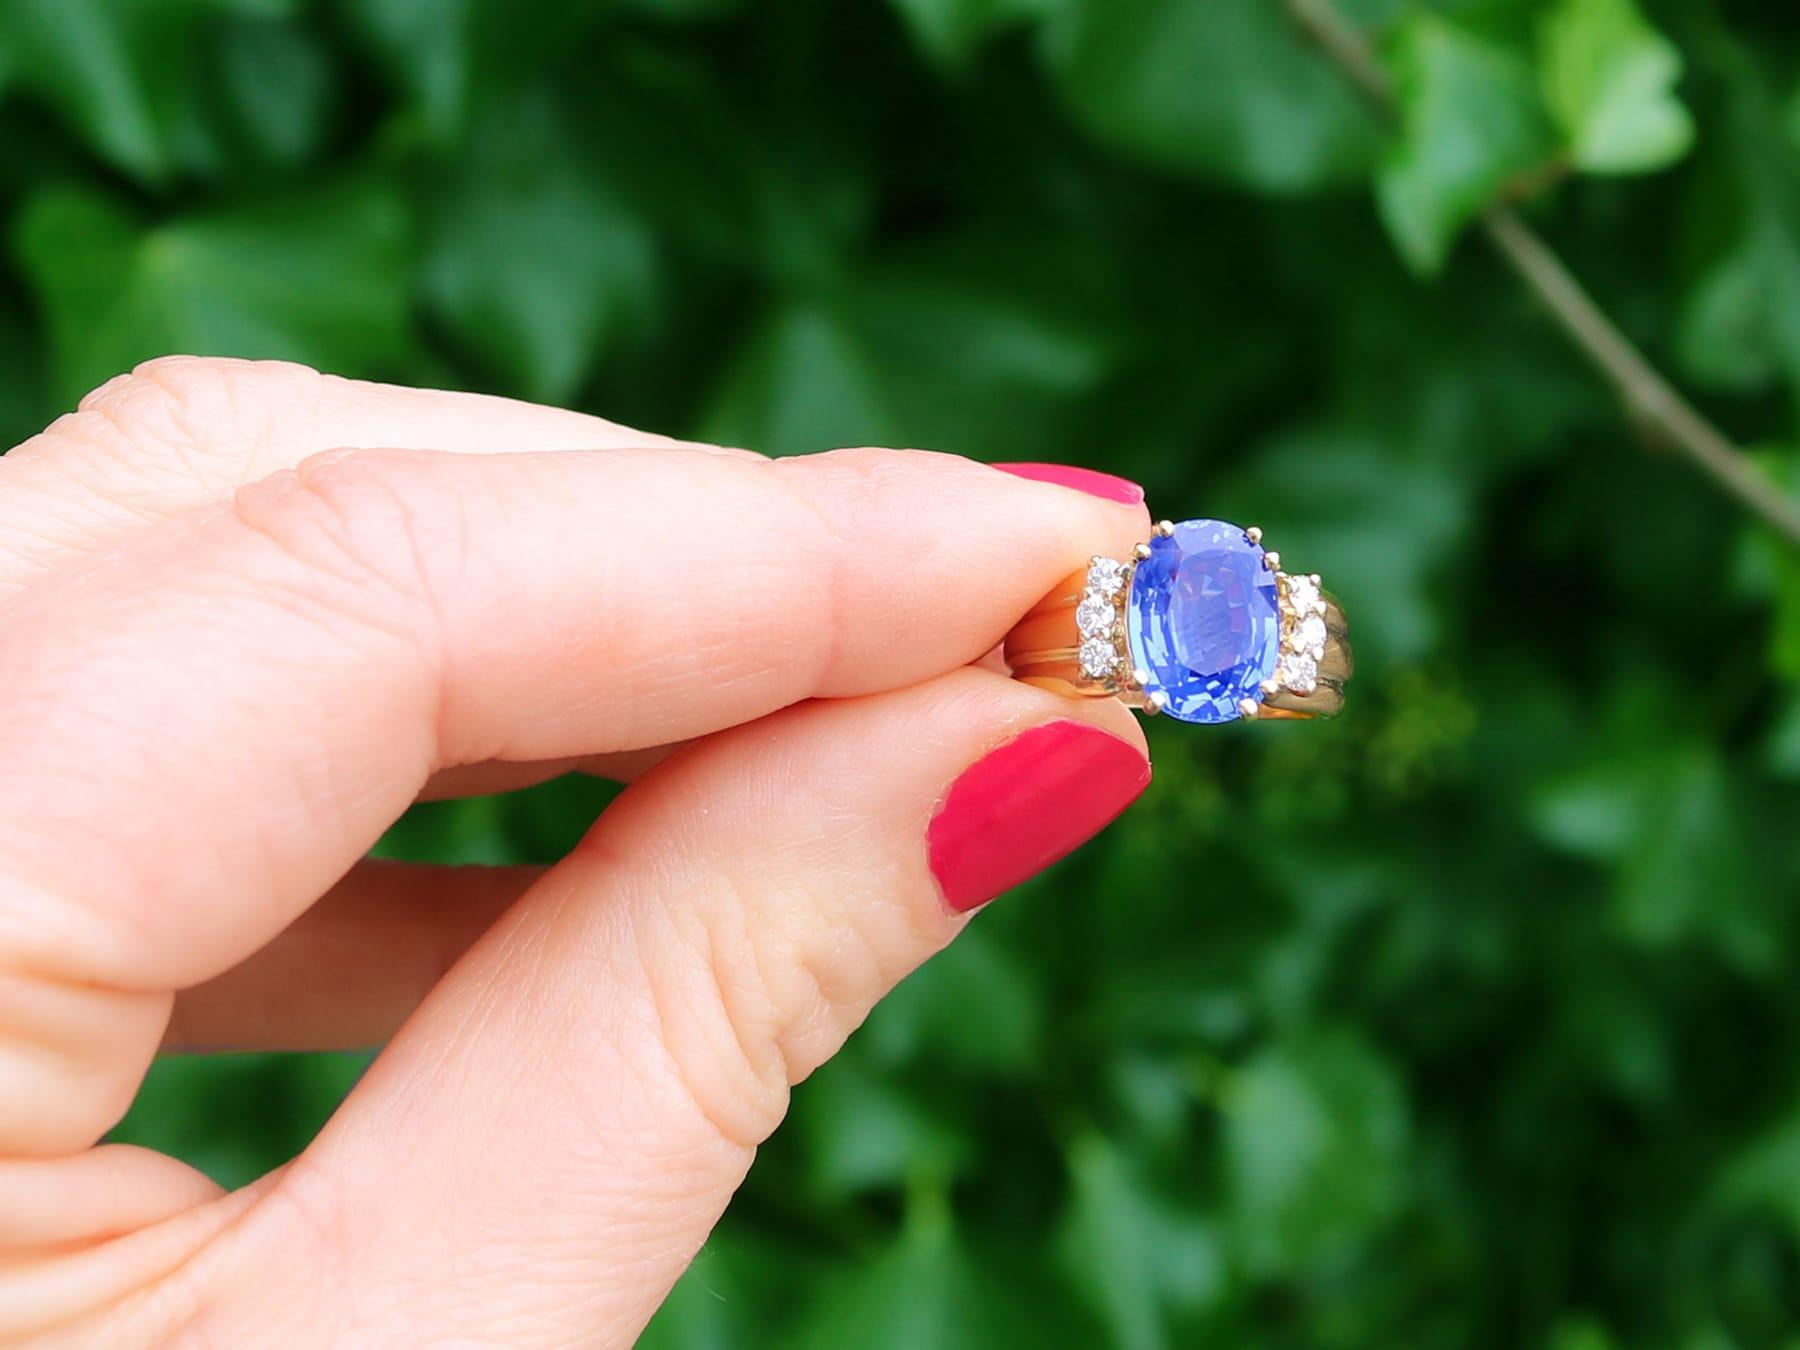 Ein feiner und beeindruckender Vintage-Ring aus Gelbgold mit 4,80 Karat blauem Saphir und 0,15 Karat Diamant; Teil unserer vielfältigen Edelstein-Schmuckkollektionen.

Dieser feine und beeindruckende Vintage-Saphirring mit Ovalschliff ist aus 18